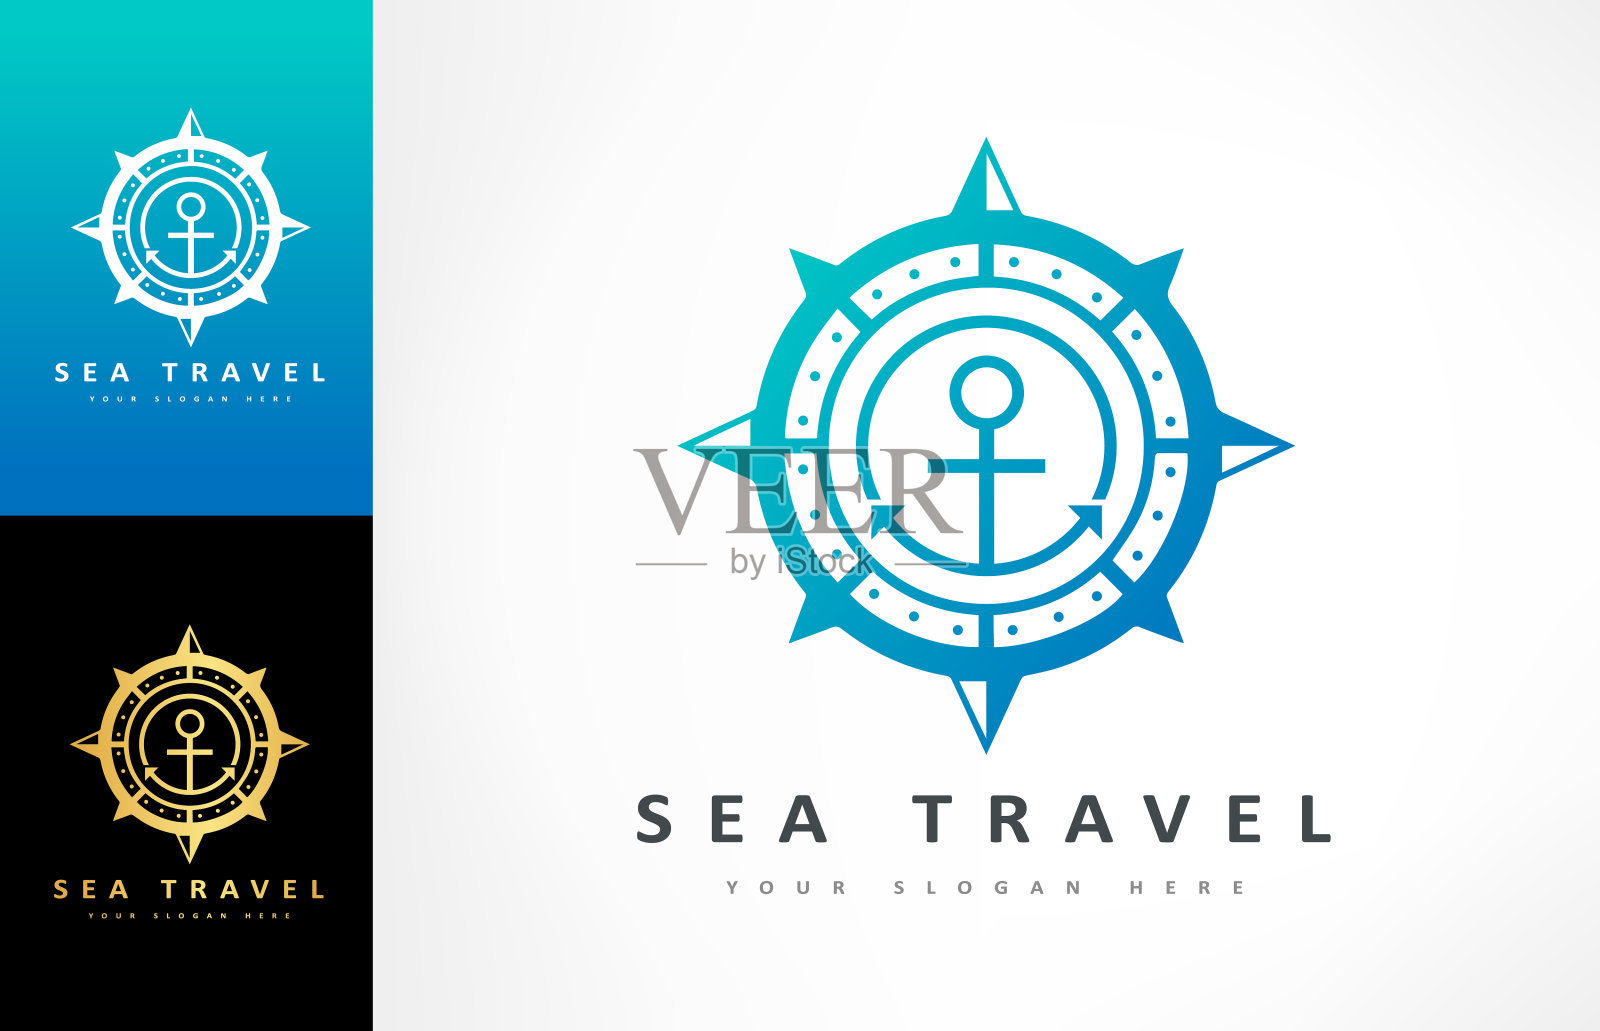 锚和罗经矢量。船舶和旅游设计。旅游导航设备。设计元素图片